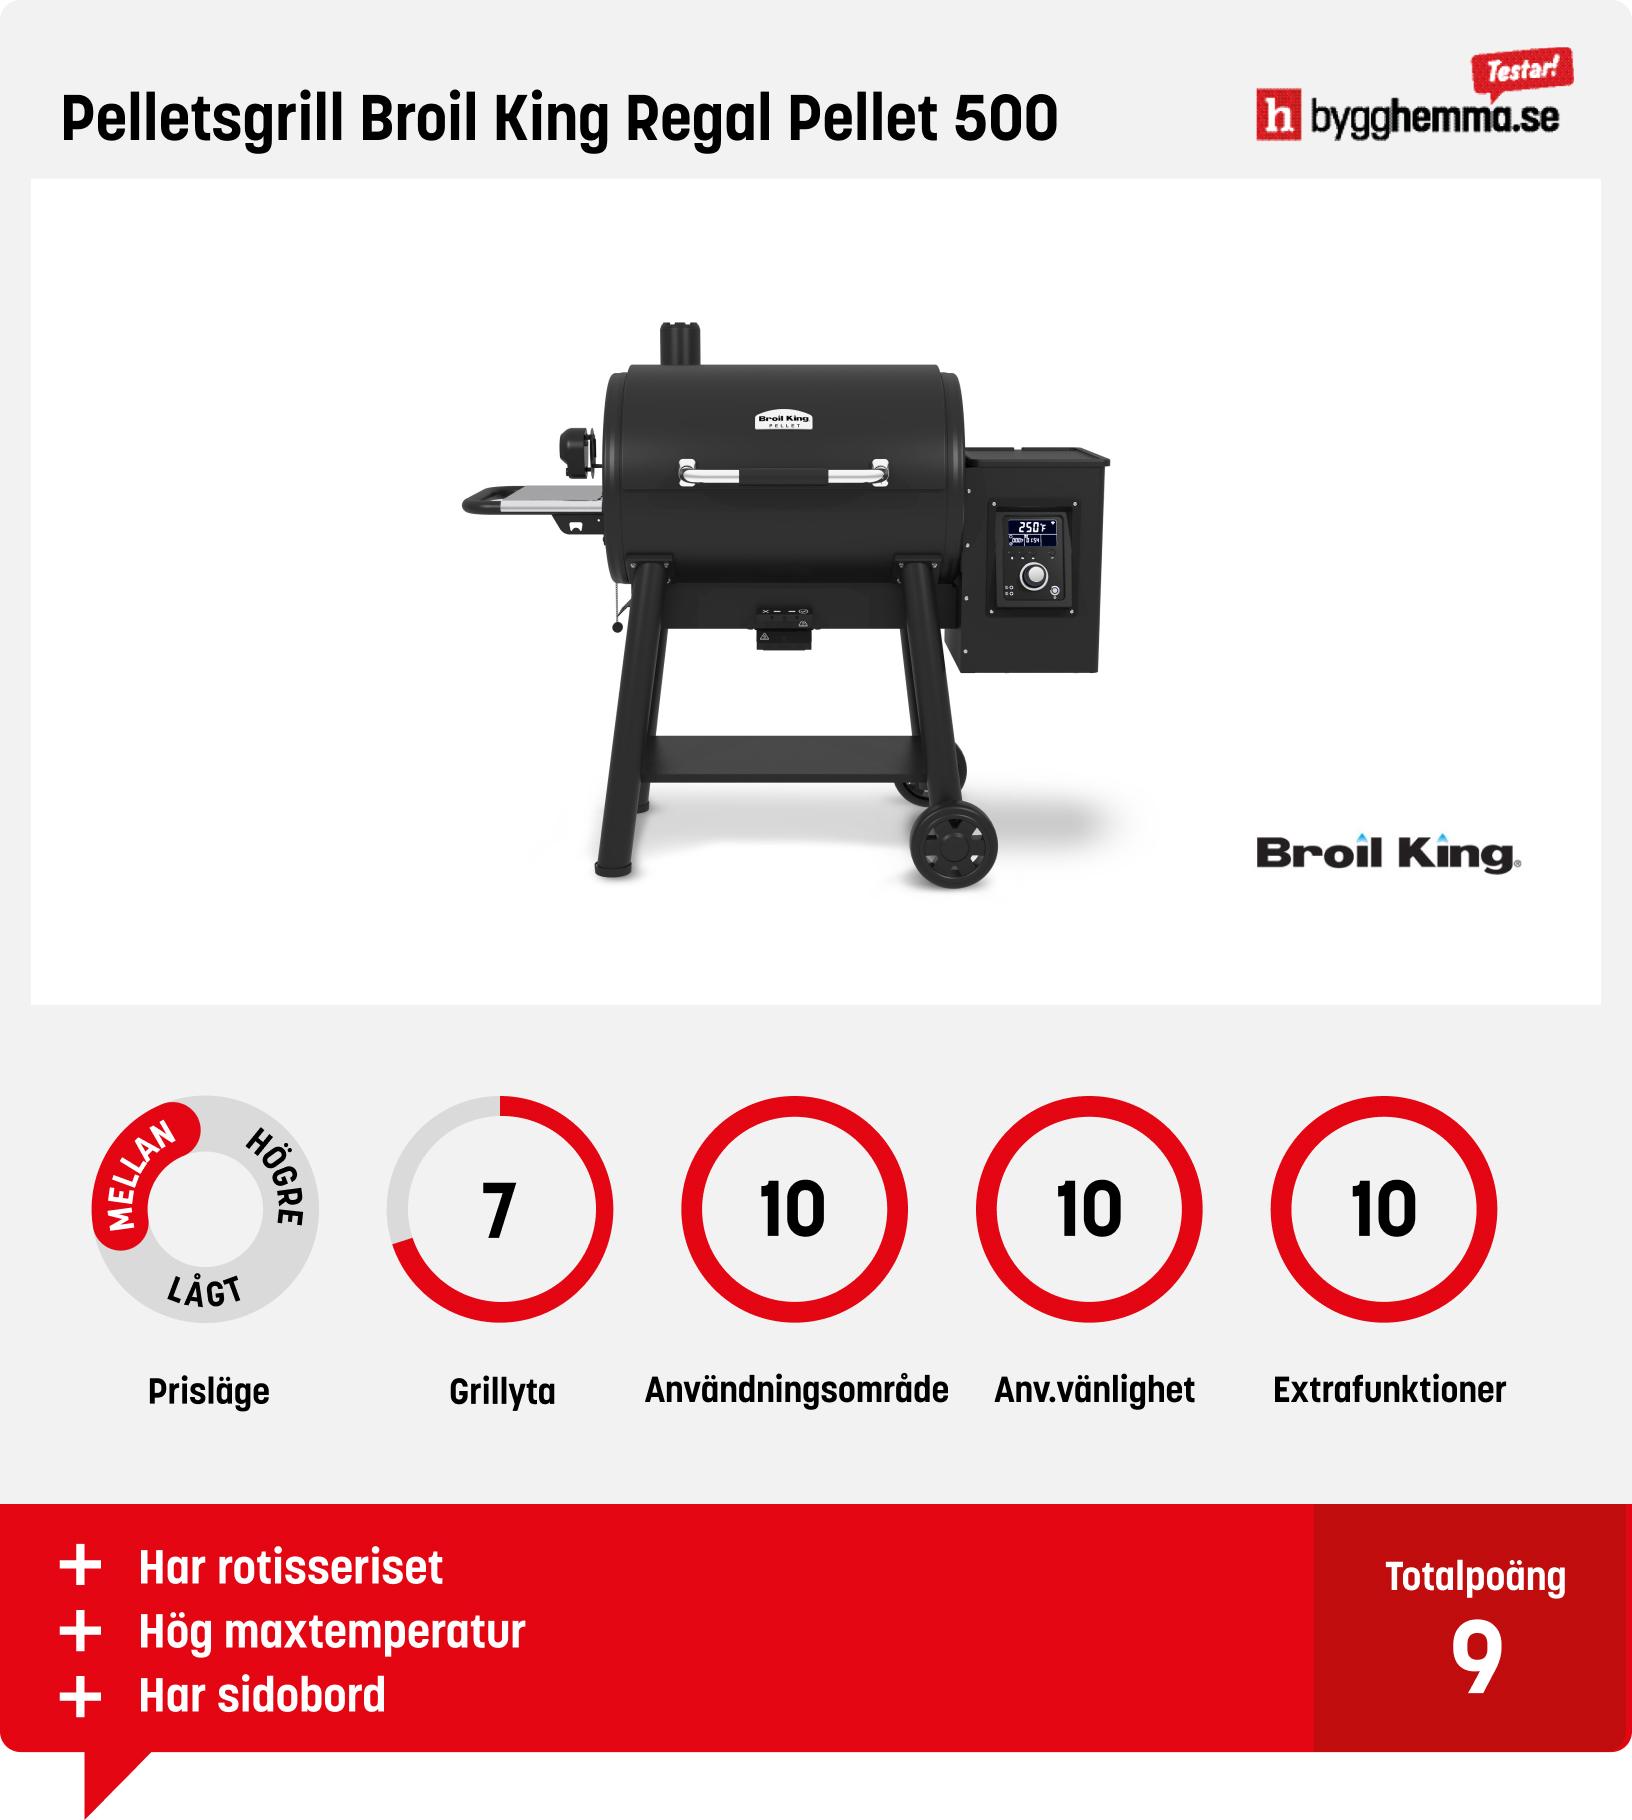 Pelletsgrill test - Pelletsgrill Broil King Regal Pellet 500